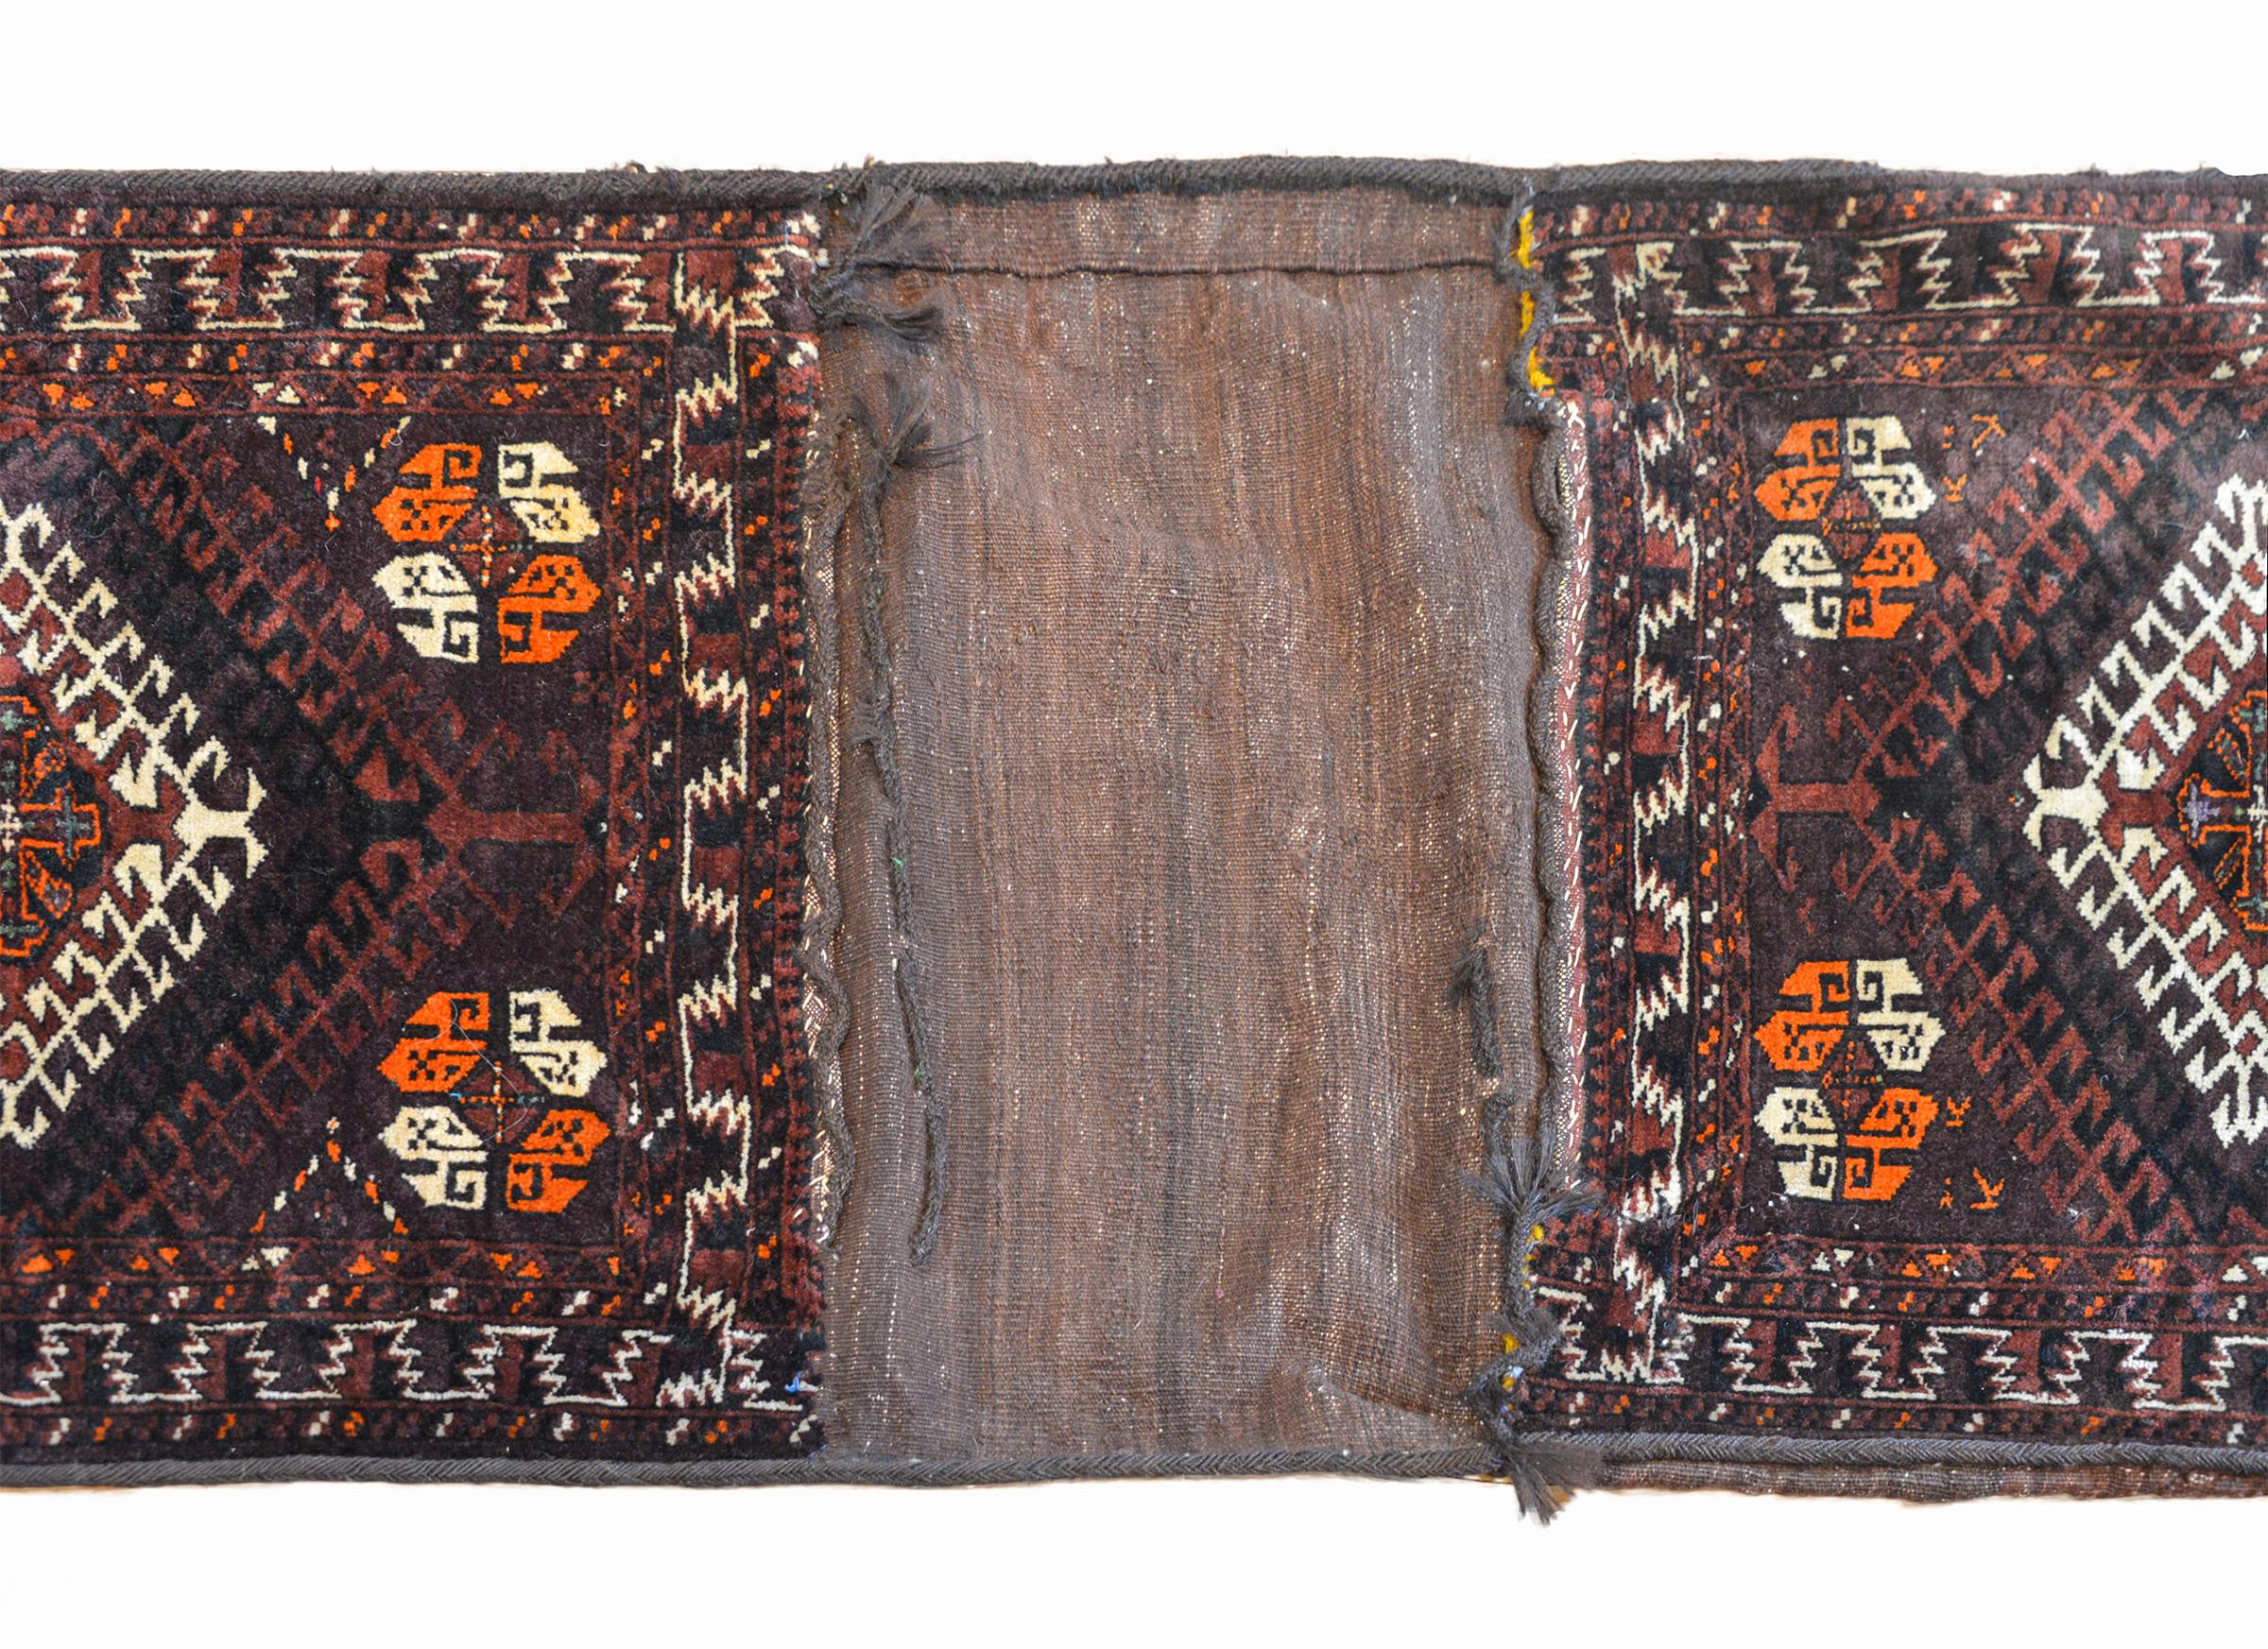 Tapis de sac à dos persan Baluch du début du XXe siècle, dont chaque face présente deux diamants blancs entourés de deux nuances de laine de couleur marron, noire et cuivre. Les bordures sont tissées de façon géométrique dans une laine de couleur